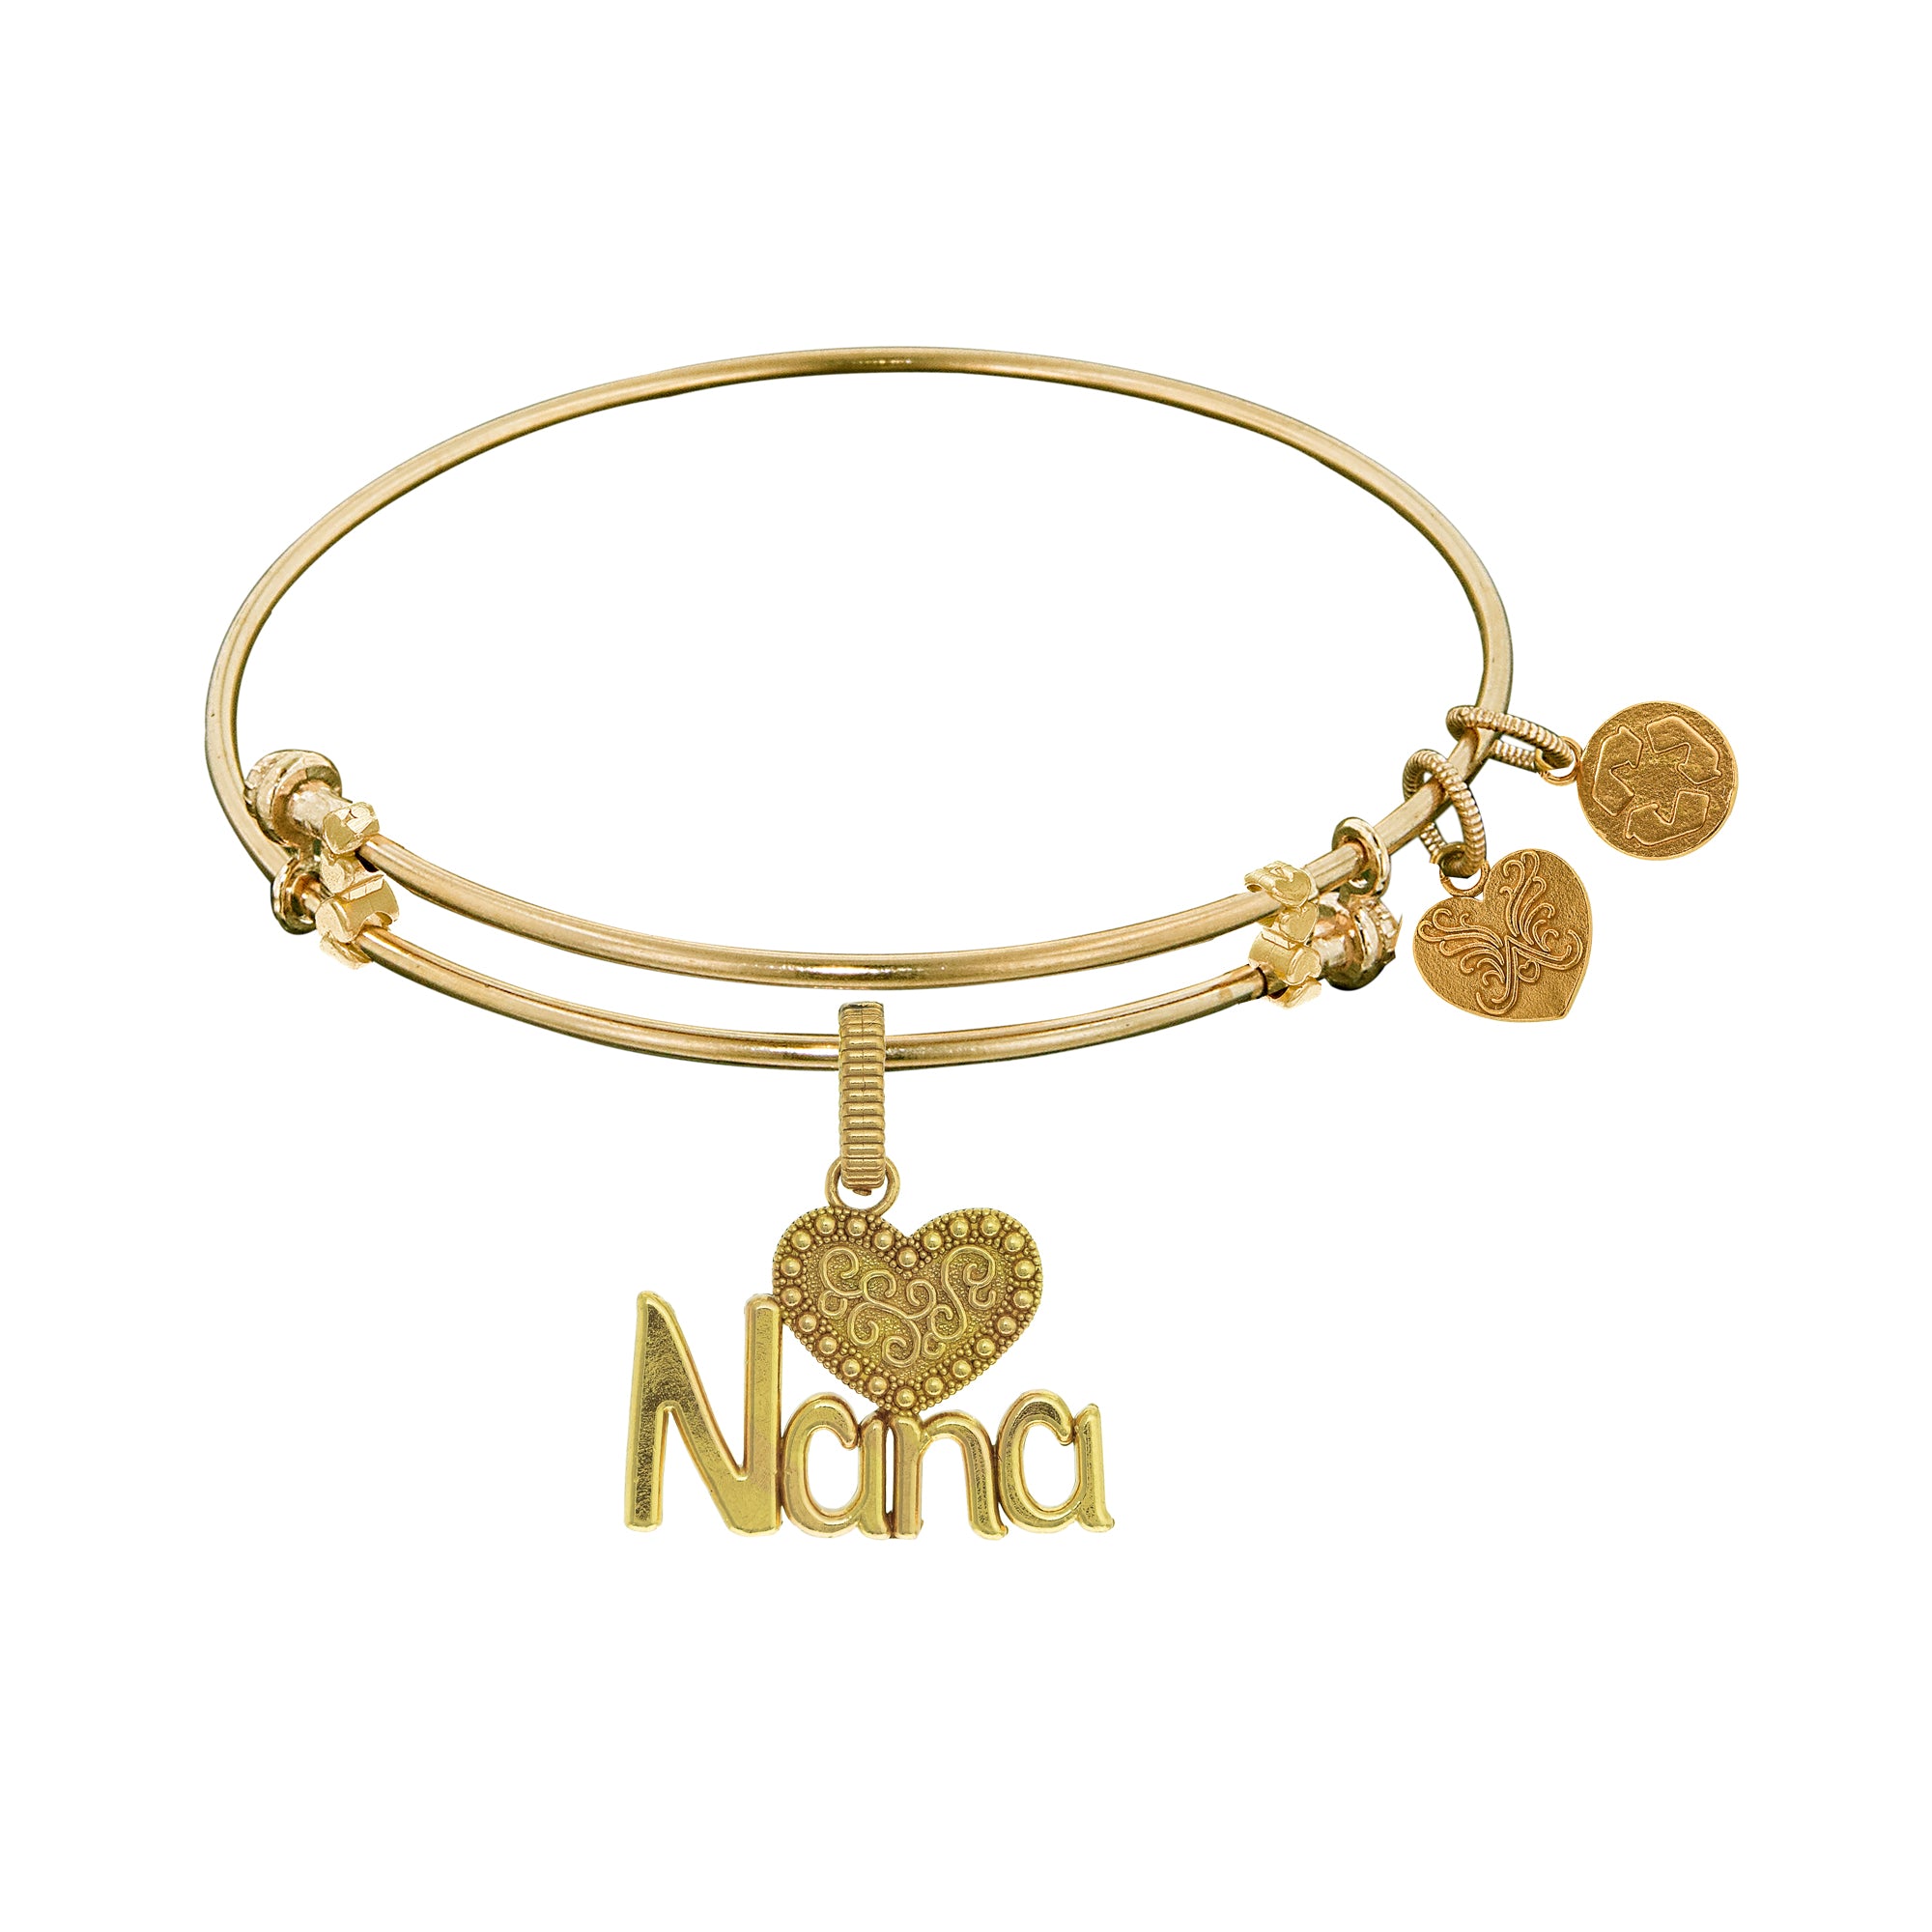 Nana With Heart Charm Expandable Bangle Bracelet, 7.25"